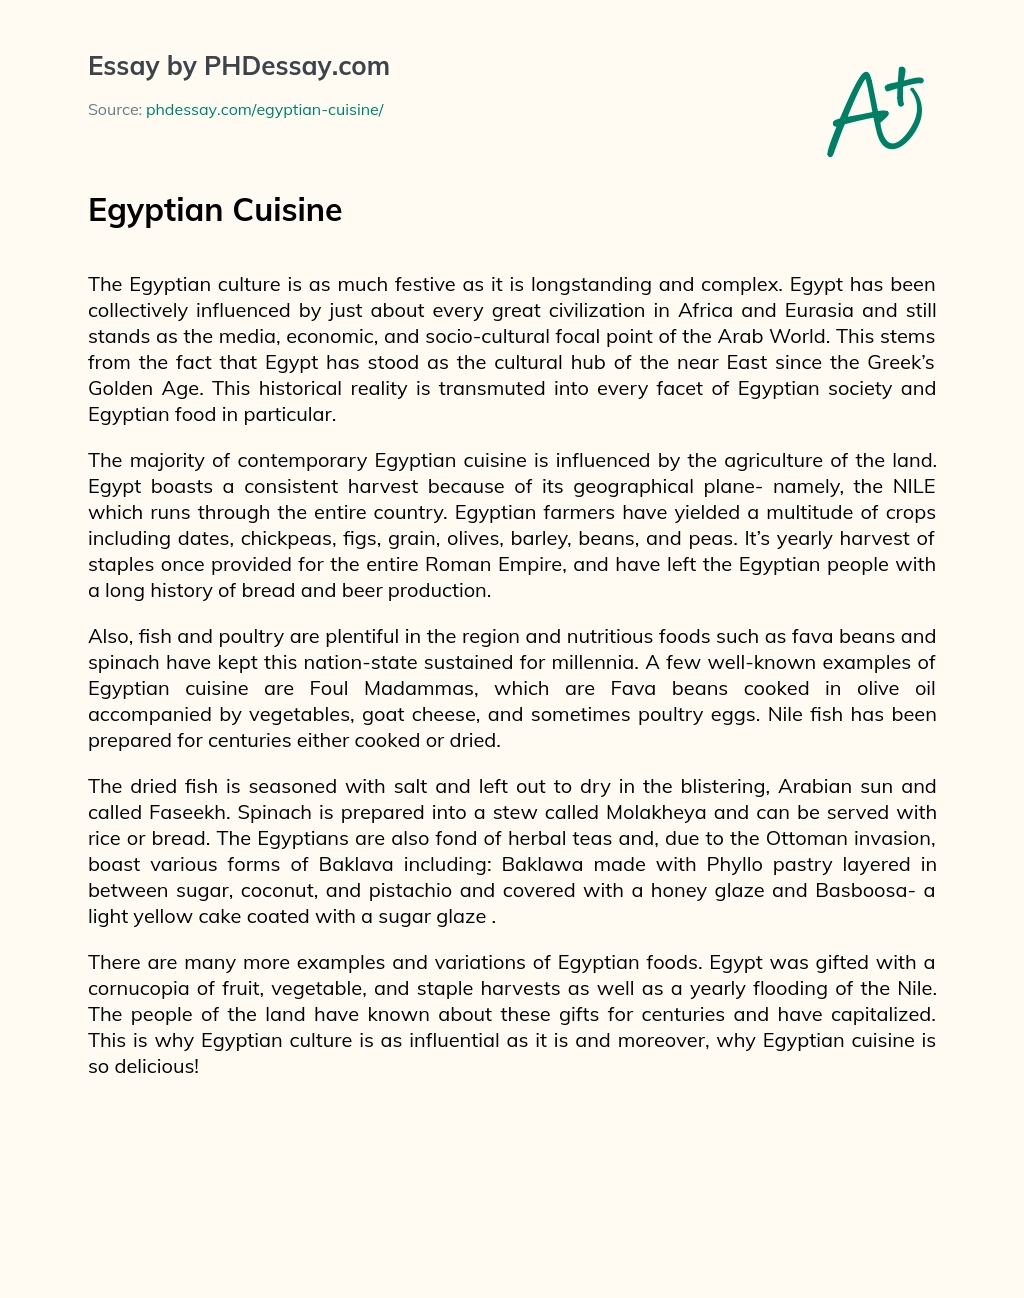 Egyptian Cuisine essay